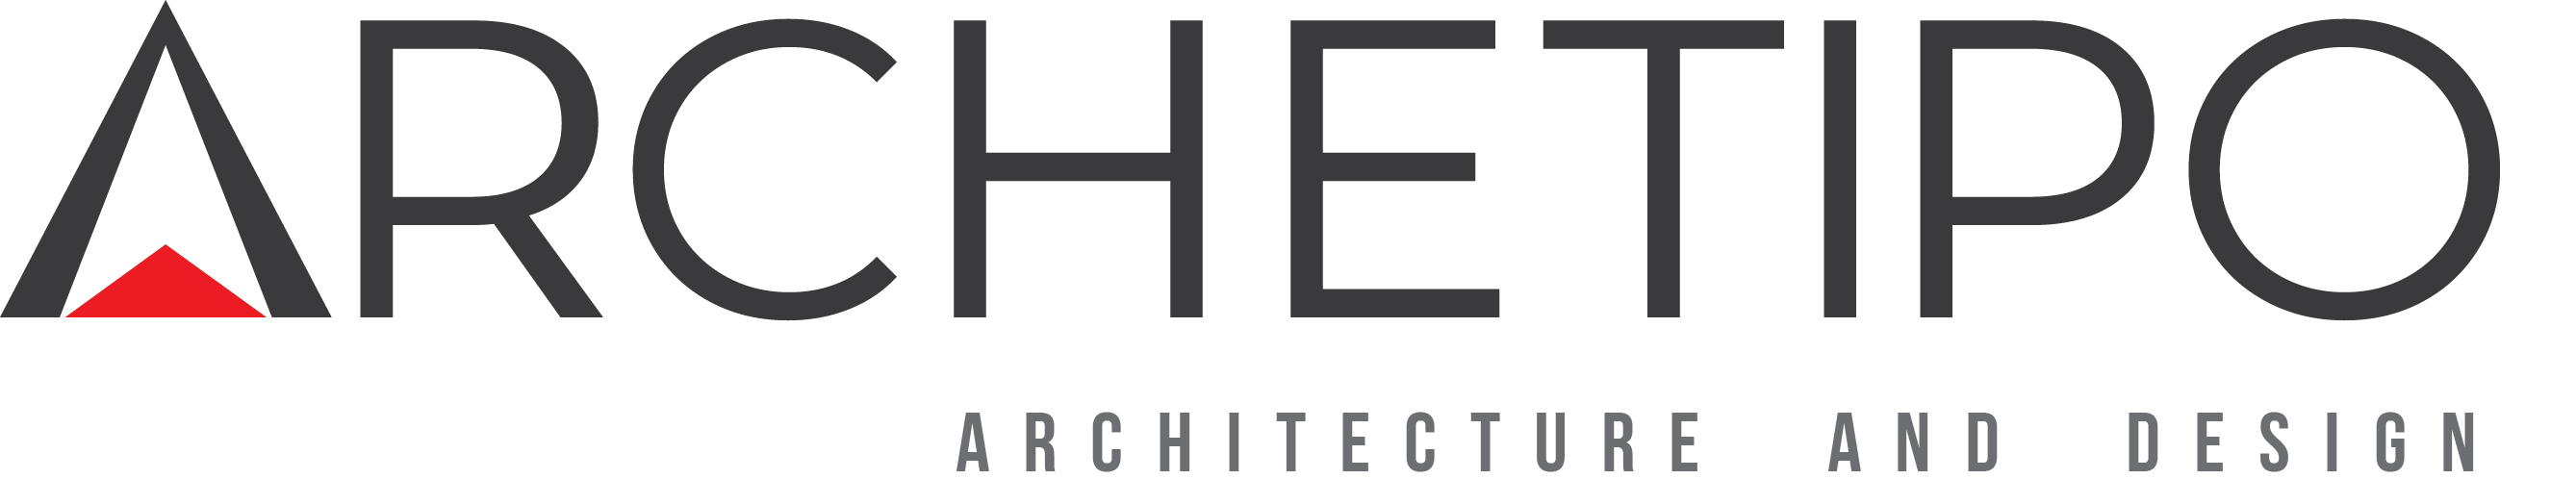 archetipo-logo